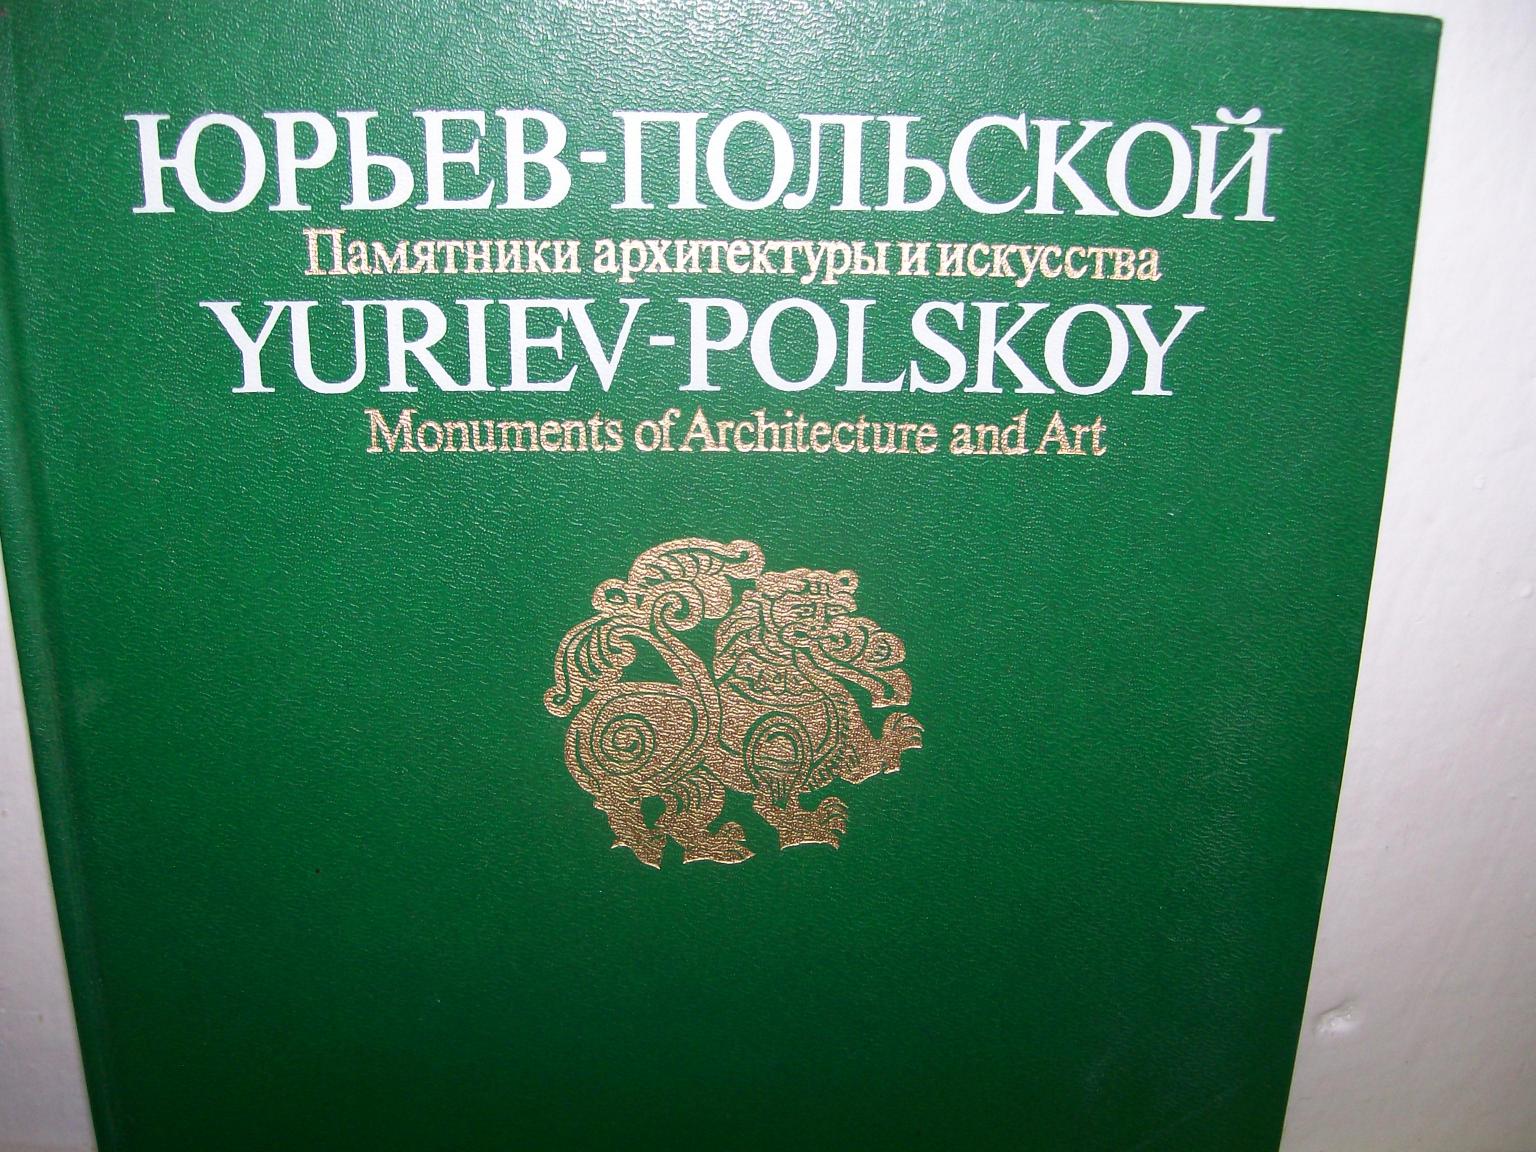 YURIEV-POLSKOY 5141